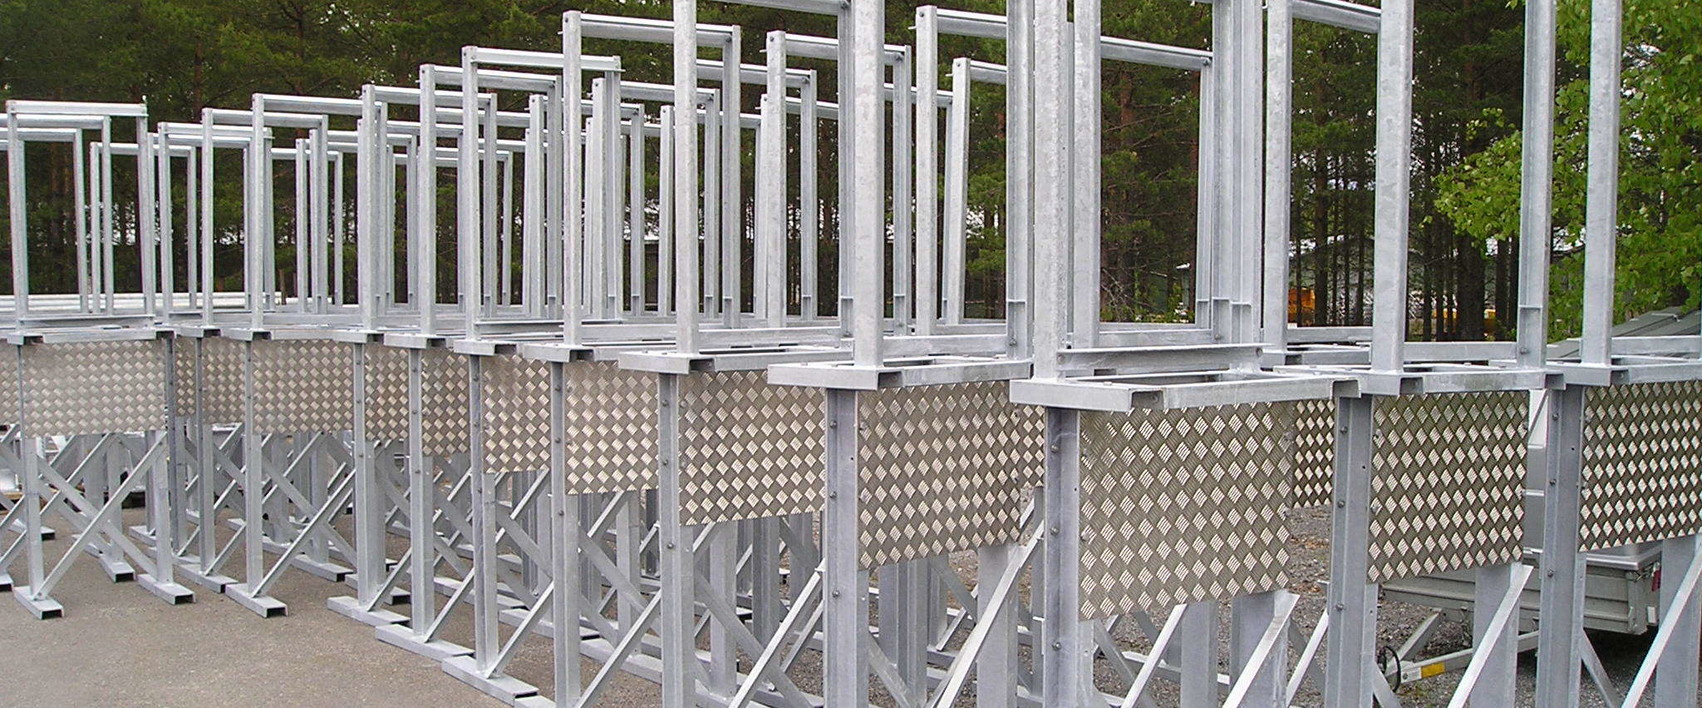 Steel and aluminium structures